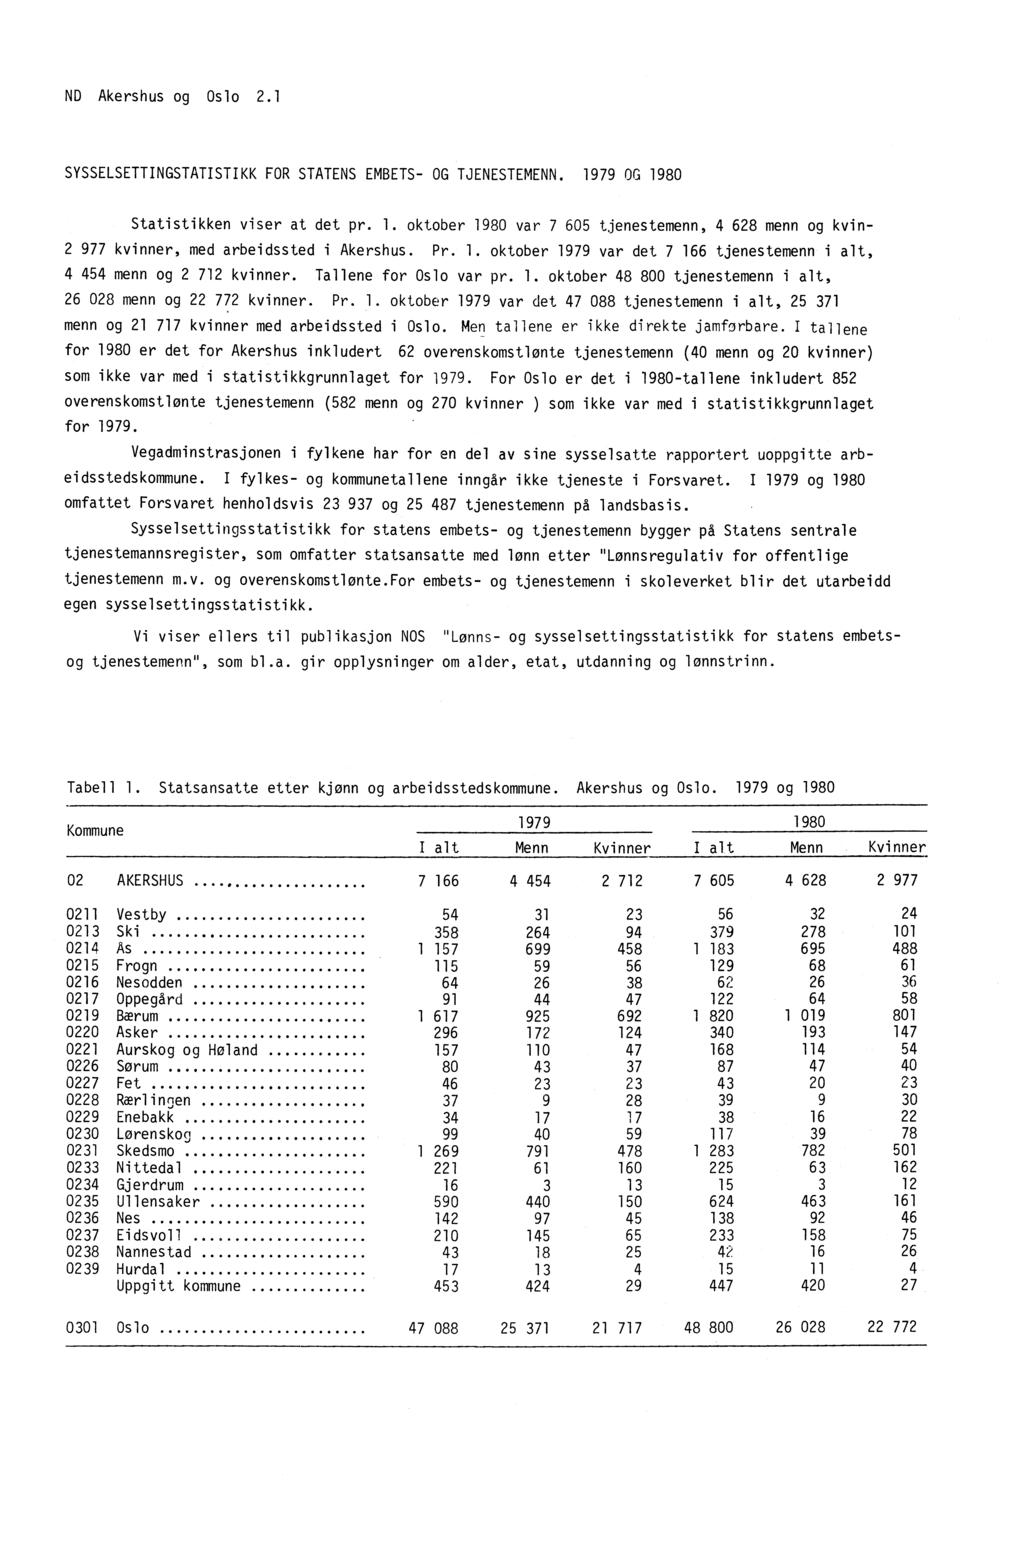 ND Akershus og Oslo 2.1 SYSSELSETTINGSTATISTIKK FOR STATENS EMBETS- OG TJENESTEMENN. 1979 OG 1980 Statistikken viser at det pr. 1. oktober 1980 var 7 605 tjenestemenn, 4 628 menn og kvin- 2 977 kvinner, med arbeidssted i Akershus.